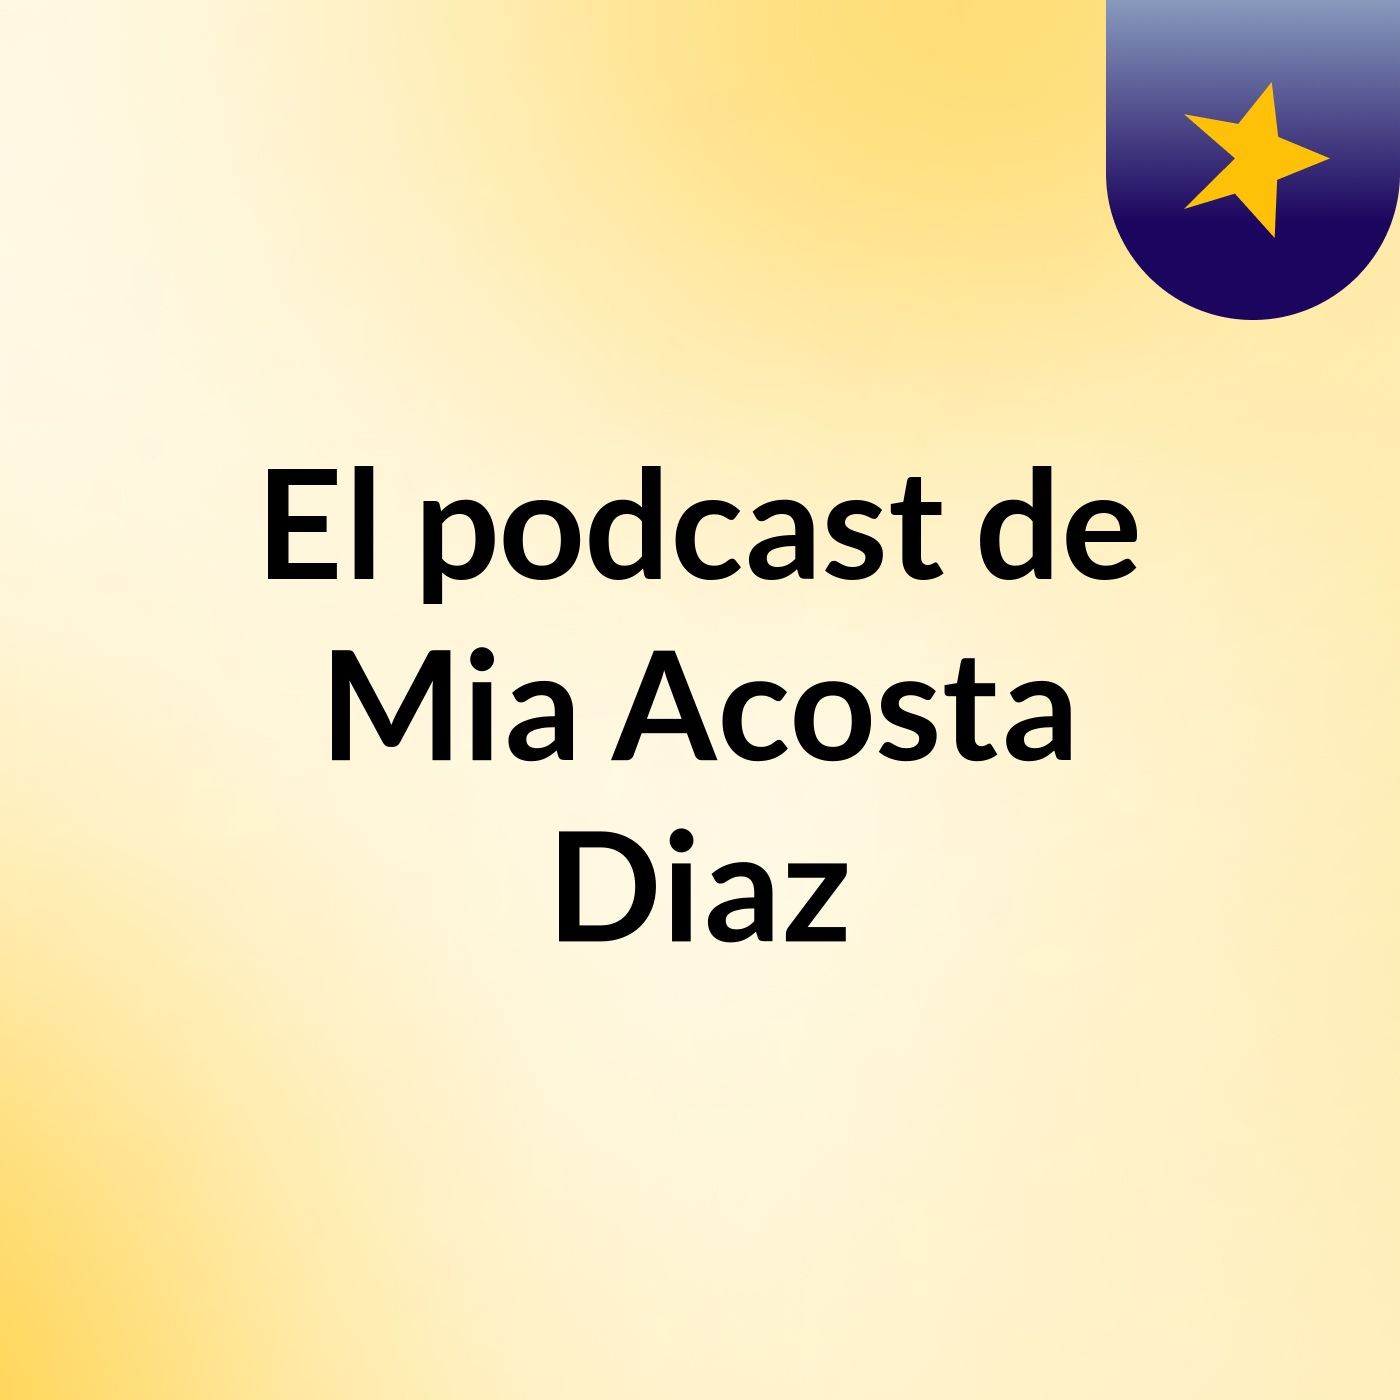 El podcast de Mia Acosta Diaz